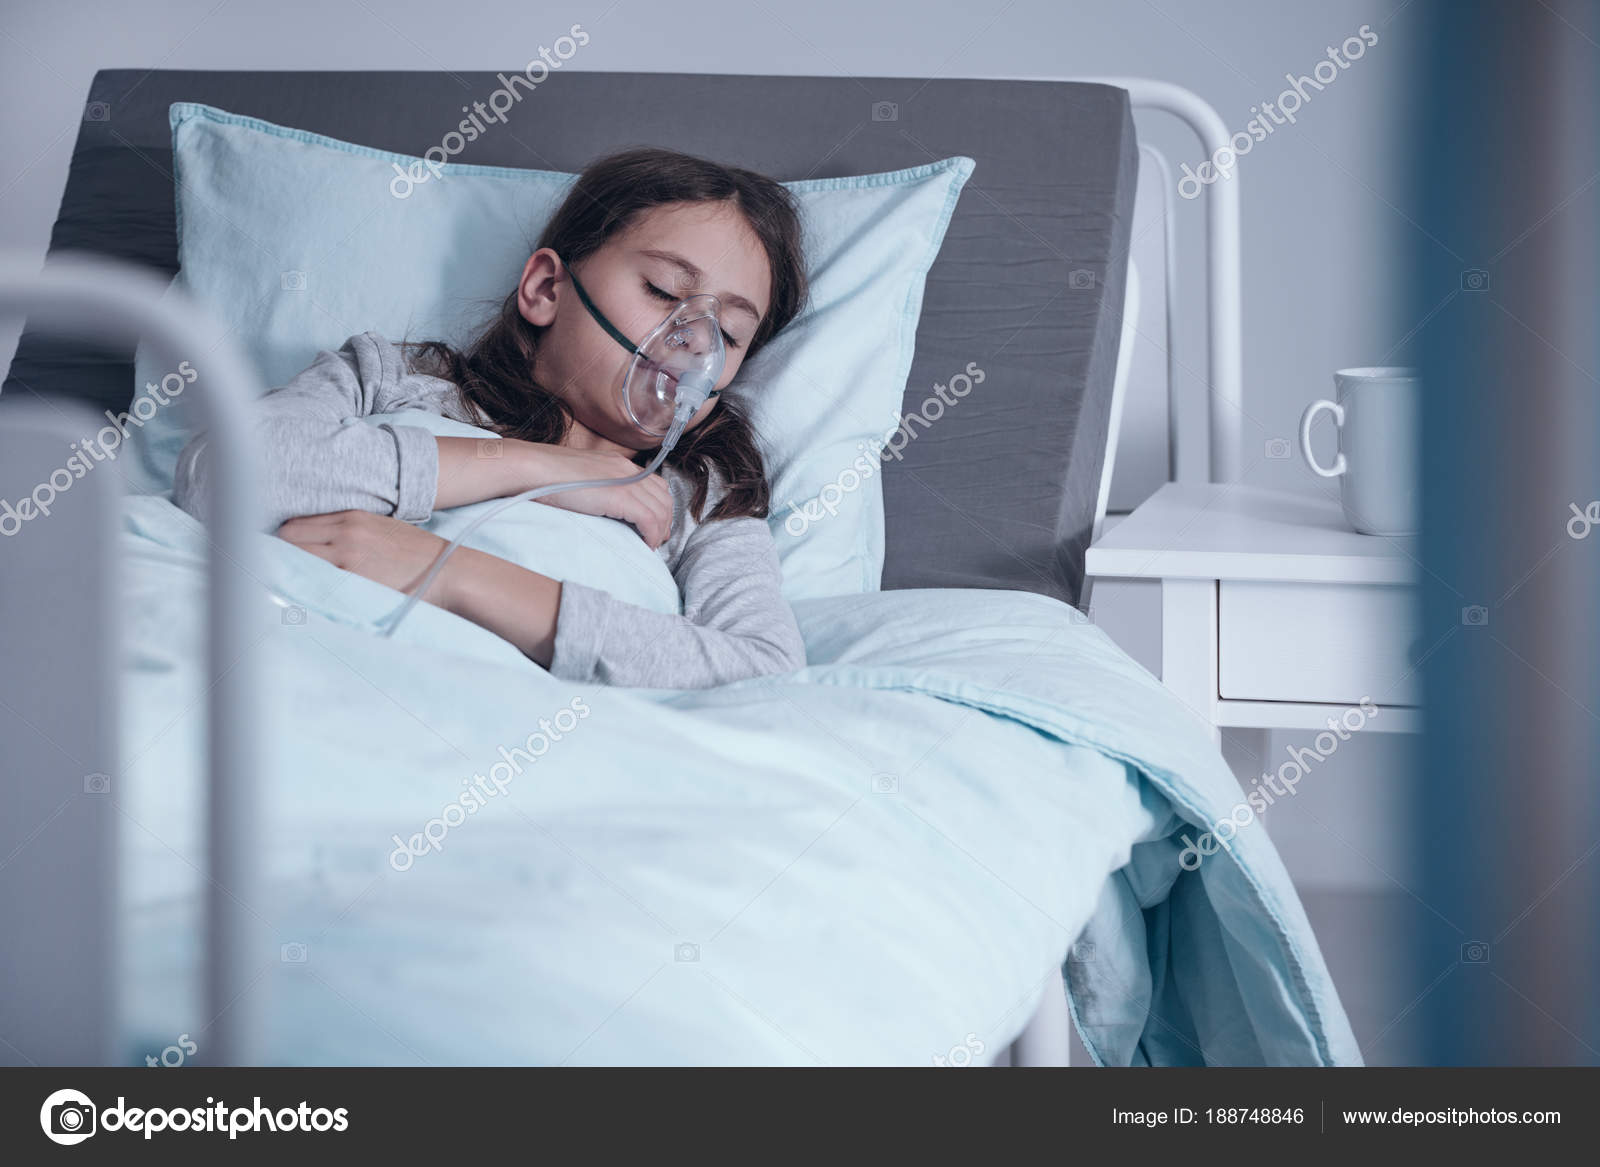 女孩睡着在医院病床上 库存图片. 图片 包括有 人们, 年轻, 水平, 放置, 子项, 不适, 枕头, 女性 - 55894123